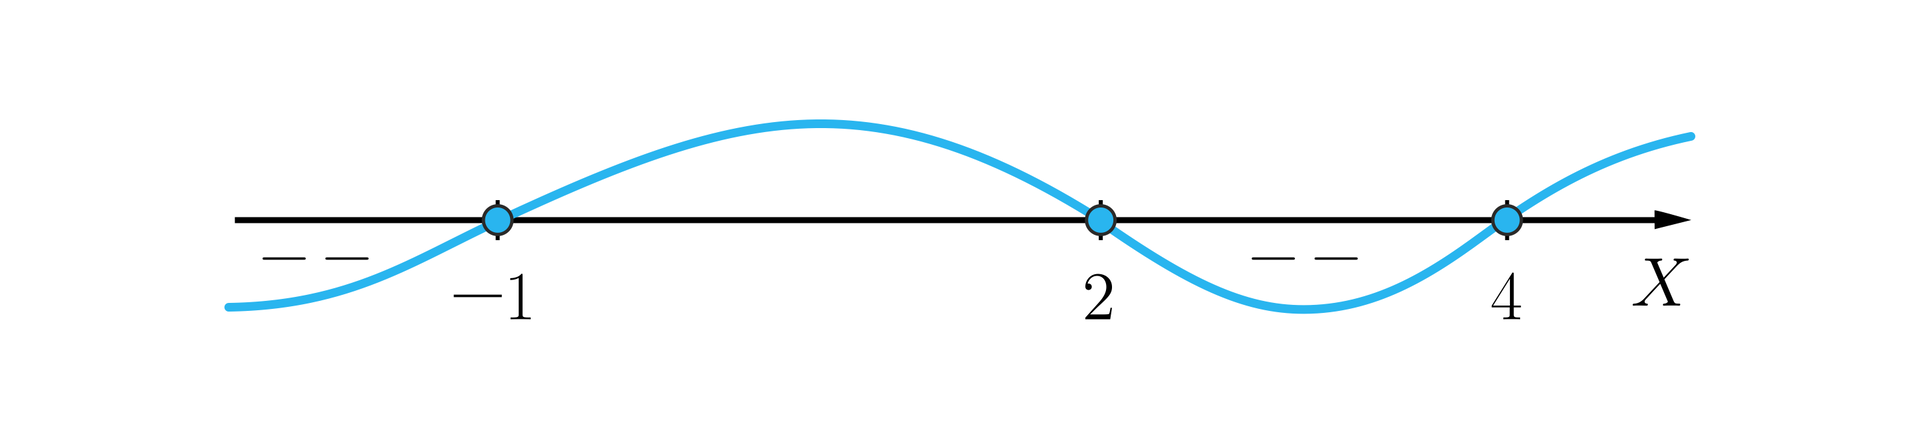 Rysunek przedstawia poziomą oś X oraz naniesiony na nią wykres wielomianu, który jest w kształcie nieregularnej poziomej fali. Na osi zaznaczono zamalowanymi kółkami następujące punkty: minus 1, 2 oraz 4 i przeprowadzono przez nie wykres wielomianu w taki sposób, że od minus nieskończoności do minus 1 wykres znajduje się pod osią, co oznaczono minusami między osią a wykresem. W punkcie minus 1 wykres przechodzi nad oś i wraca pod oś w punkcie 2. Od punktu 2 do 4 biegnie pod osią, co również zaznaczono minusami. W czwórce przebija nad oś.